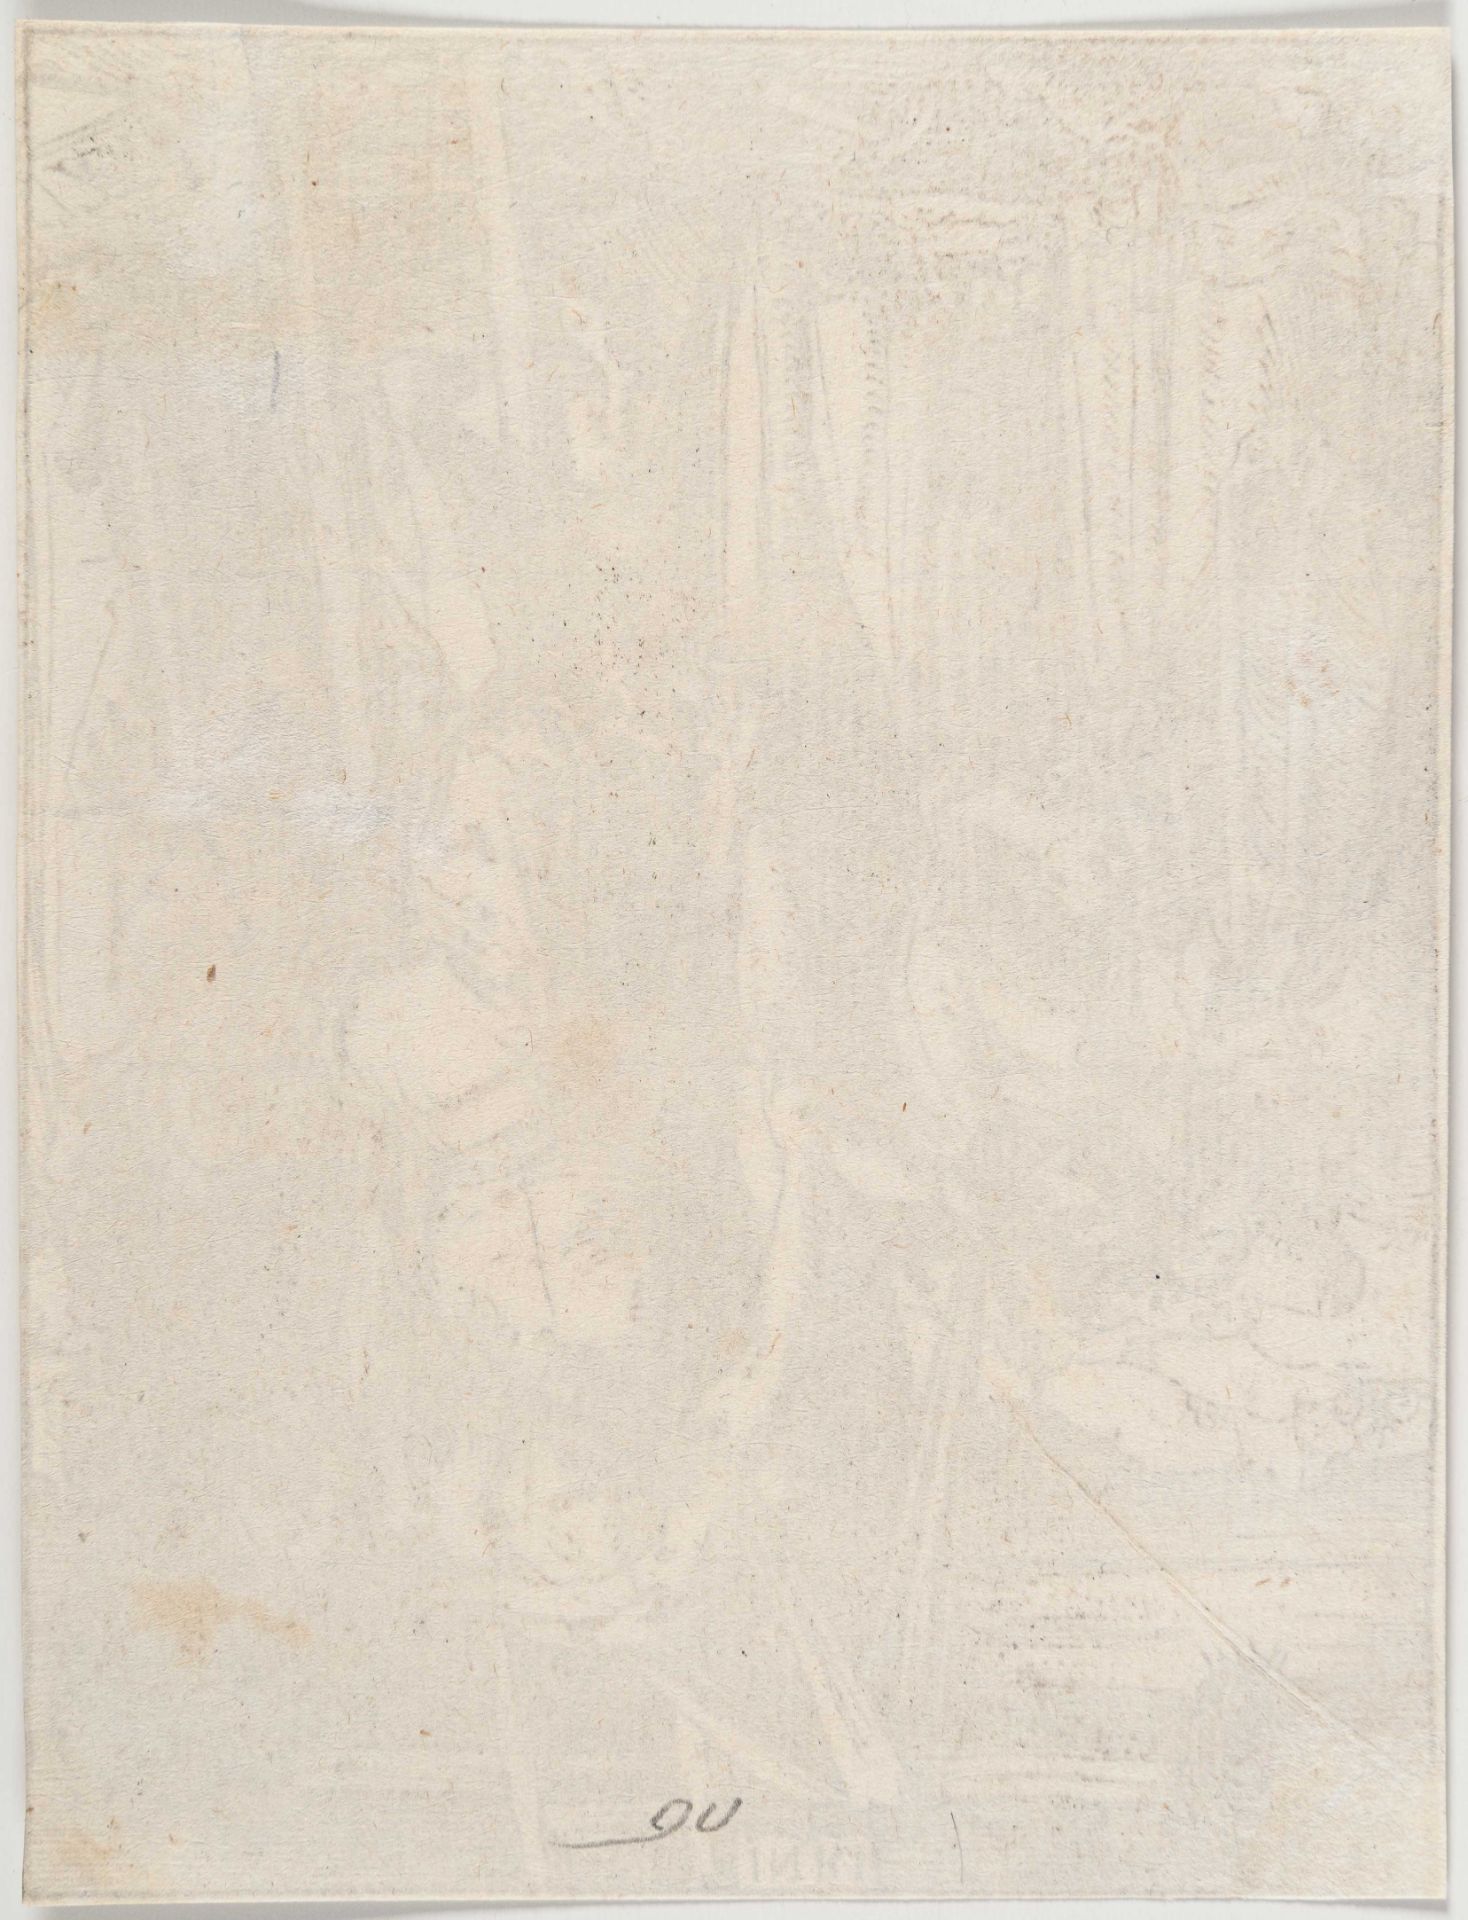 Albrecht Dürer – The descent from the Cross - Image 3 of 3